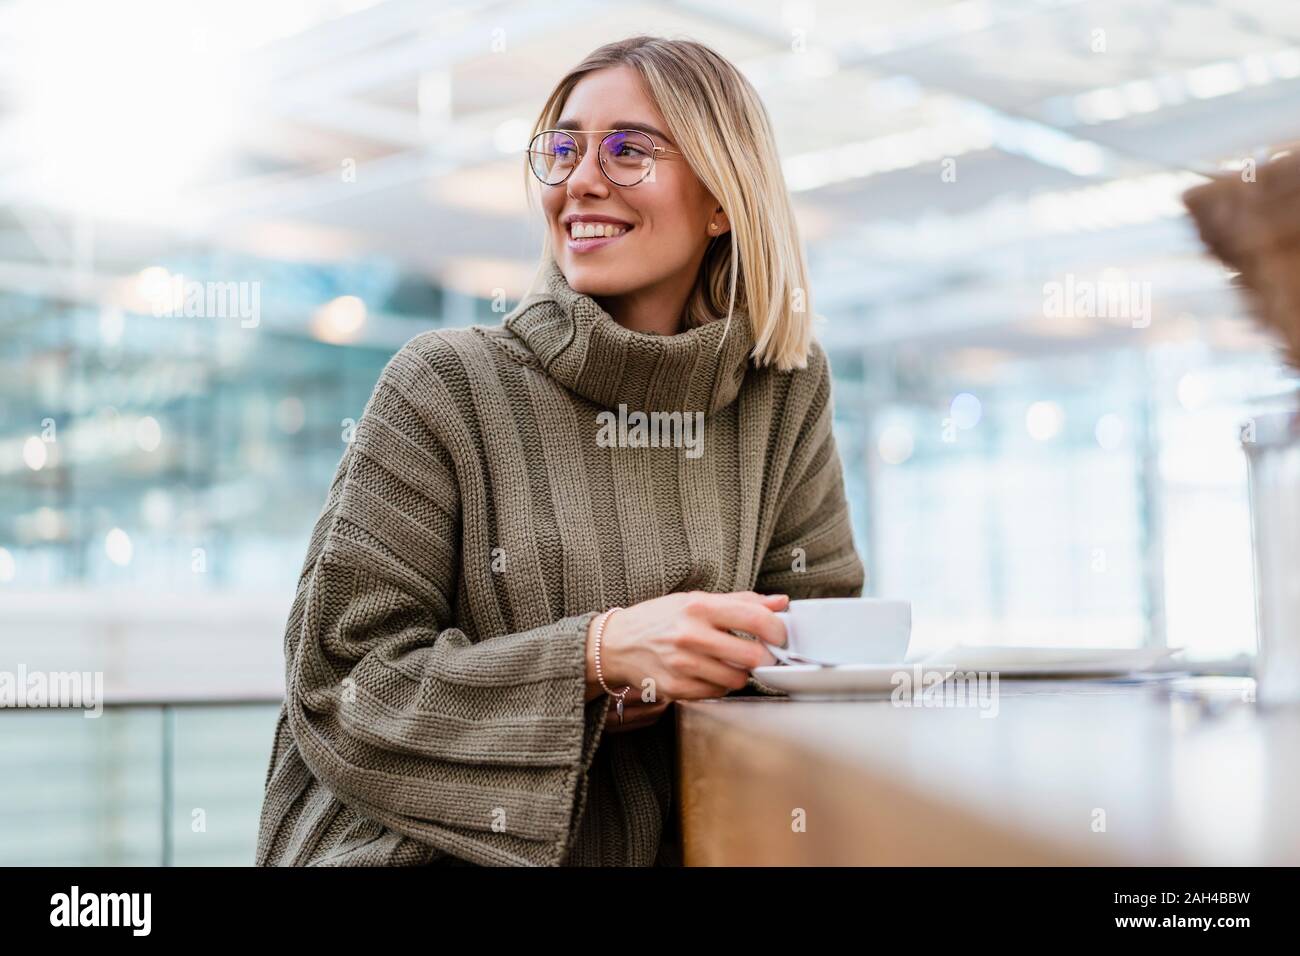 Ritratto di un sorridente giovane donna in una caffetteria che guarda lontano Foto Stock